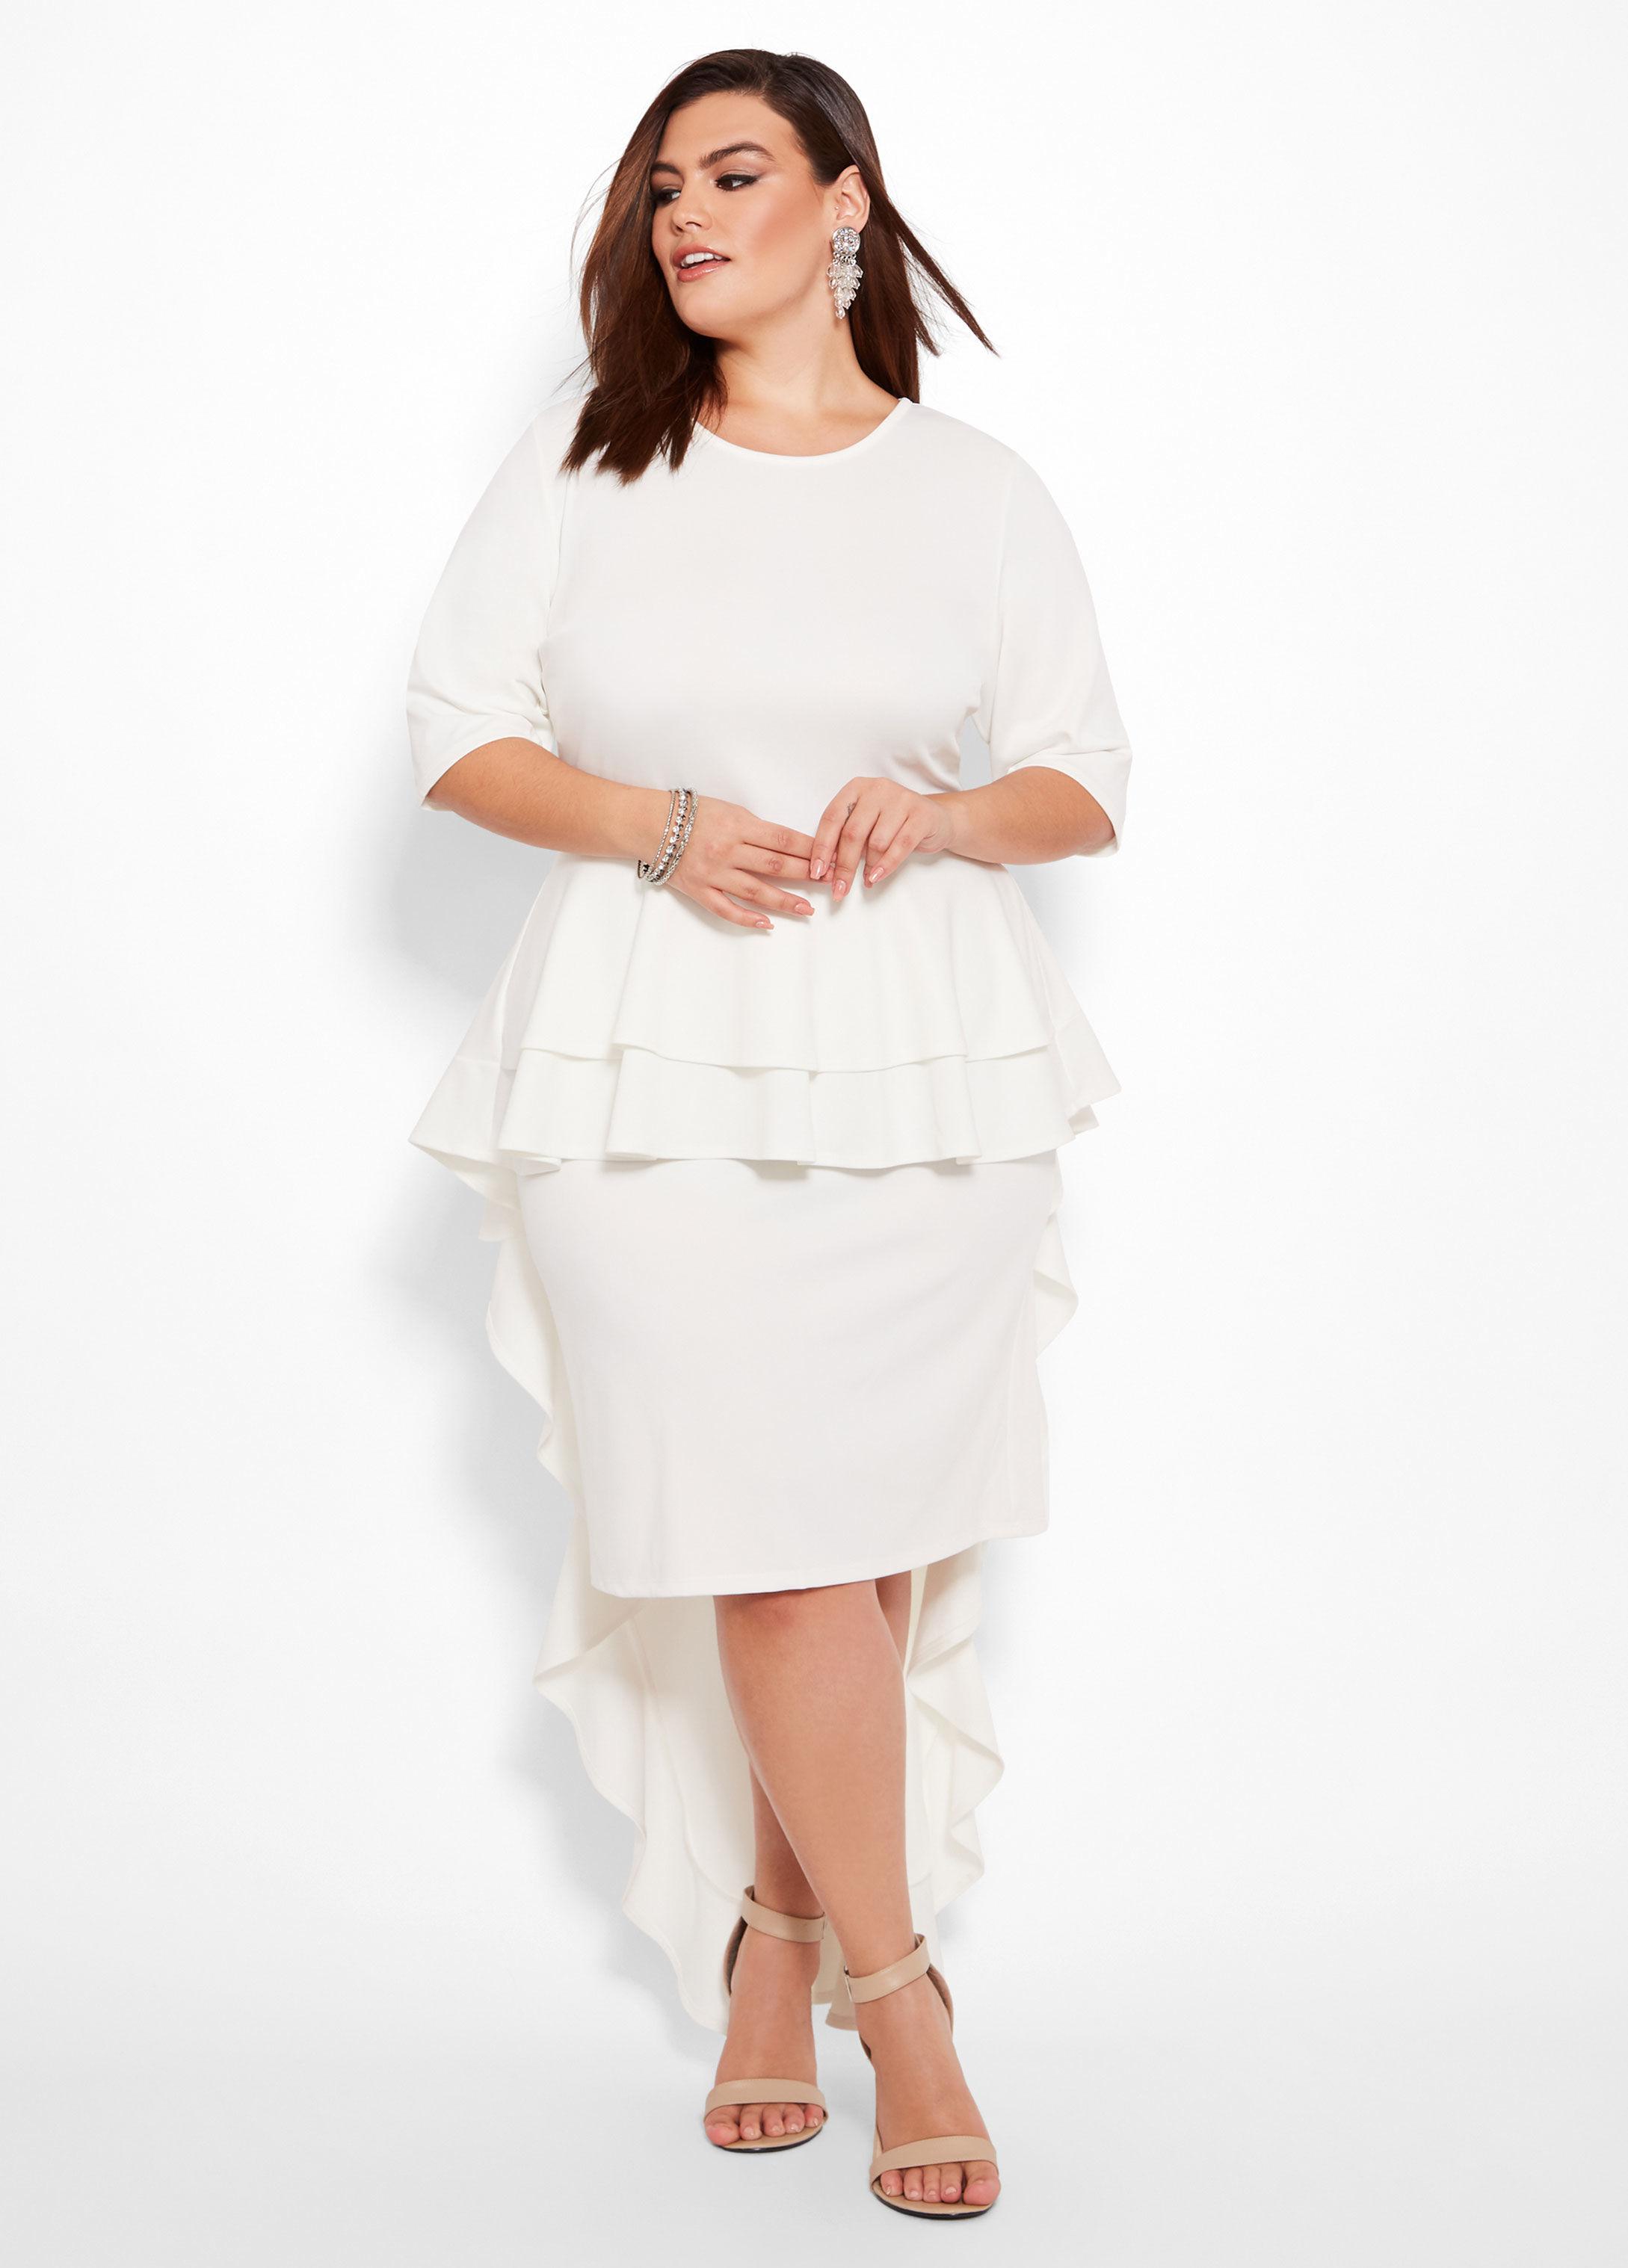 white peplum dress